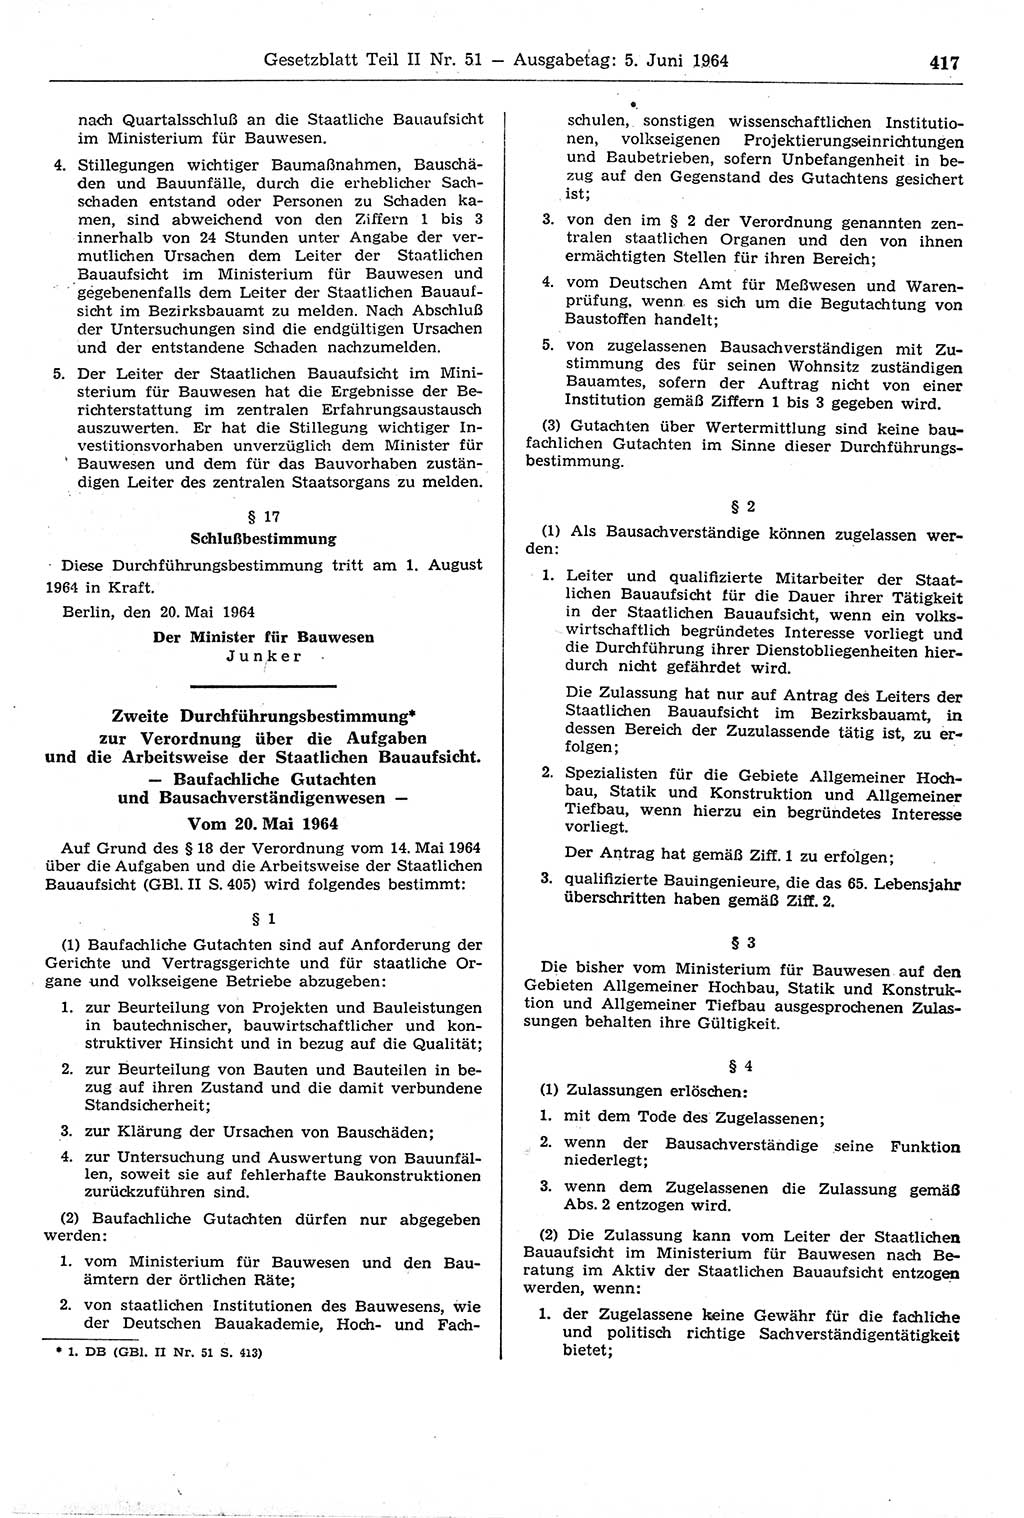 Gesetzblatt (GBl.) der Deutschen Demokratischen Republik (DDR) Teil ⅠⅠ 1964, Seite 417 (GBl. DDR ⅠⅠ 1964, S. 417)